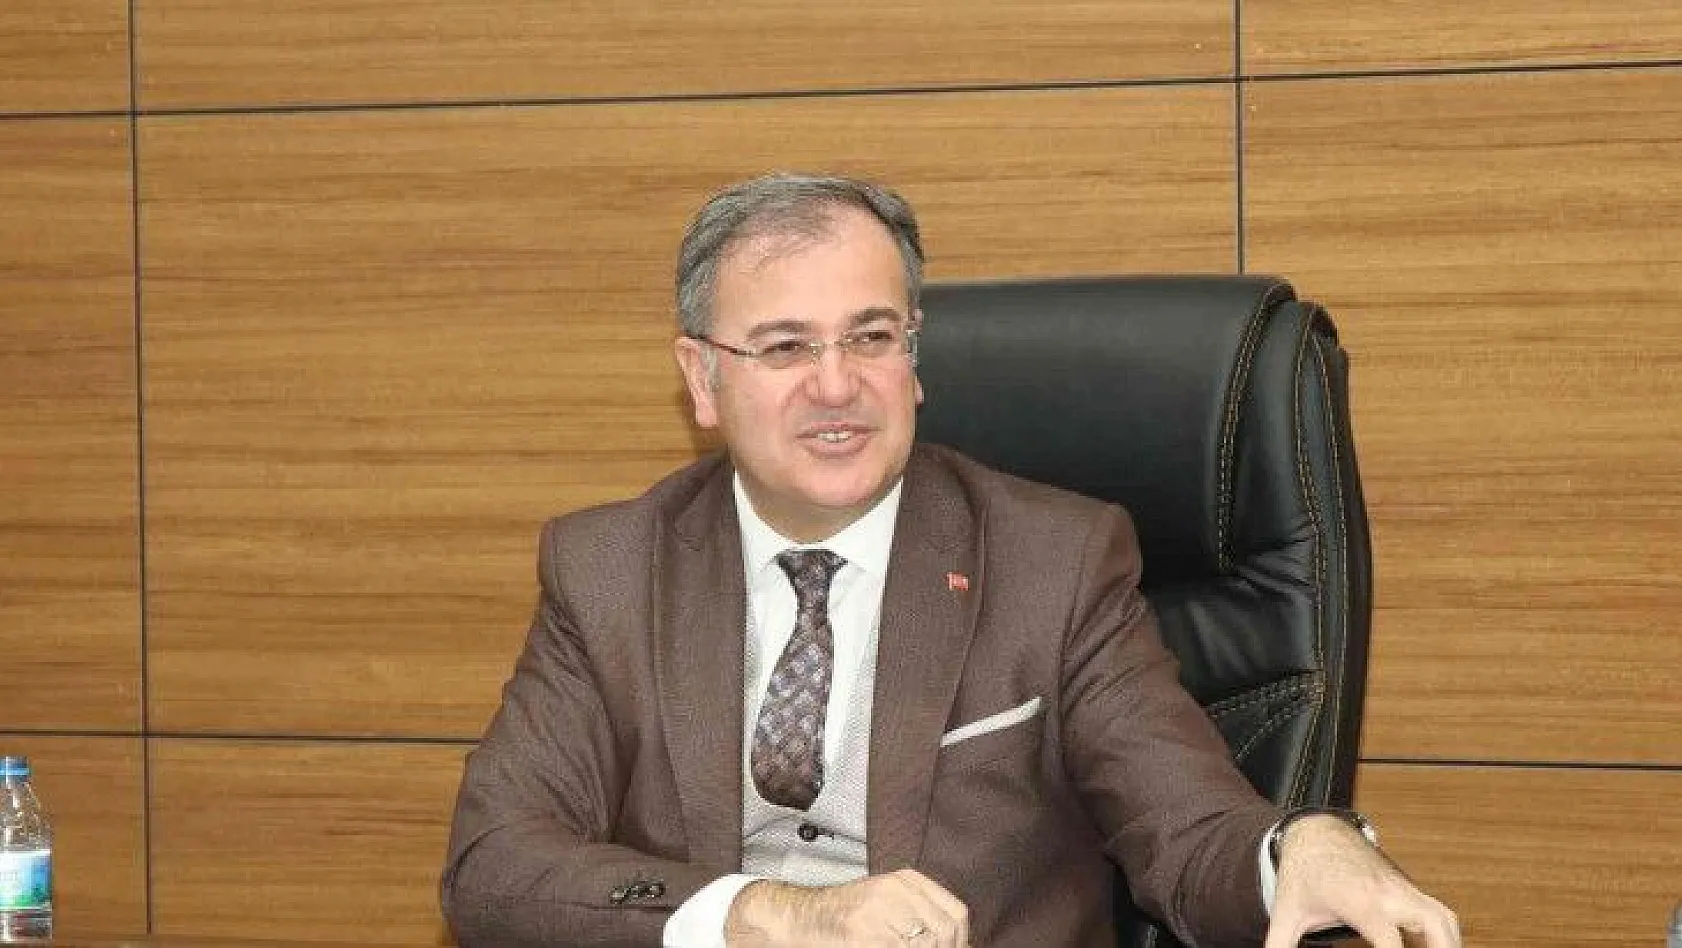 Hacılar Belediye Meclisi Mart Ayı Toplantısını yaptı